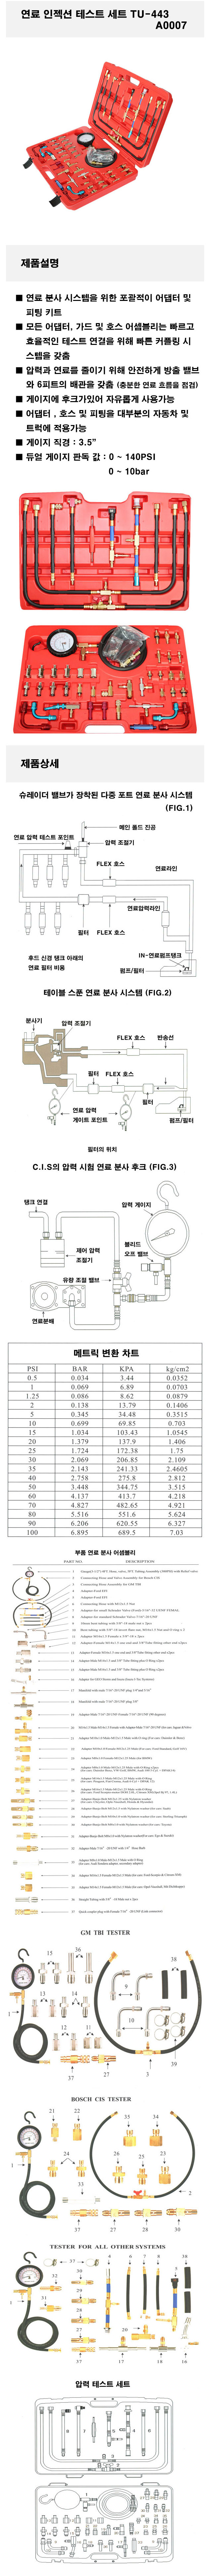 인젝션용 연료펌프 압력테스터기 세트 / 연료 펌프 압력 테스터기 세트 (인젝션 용)